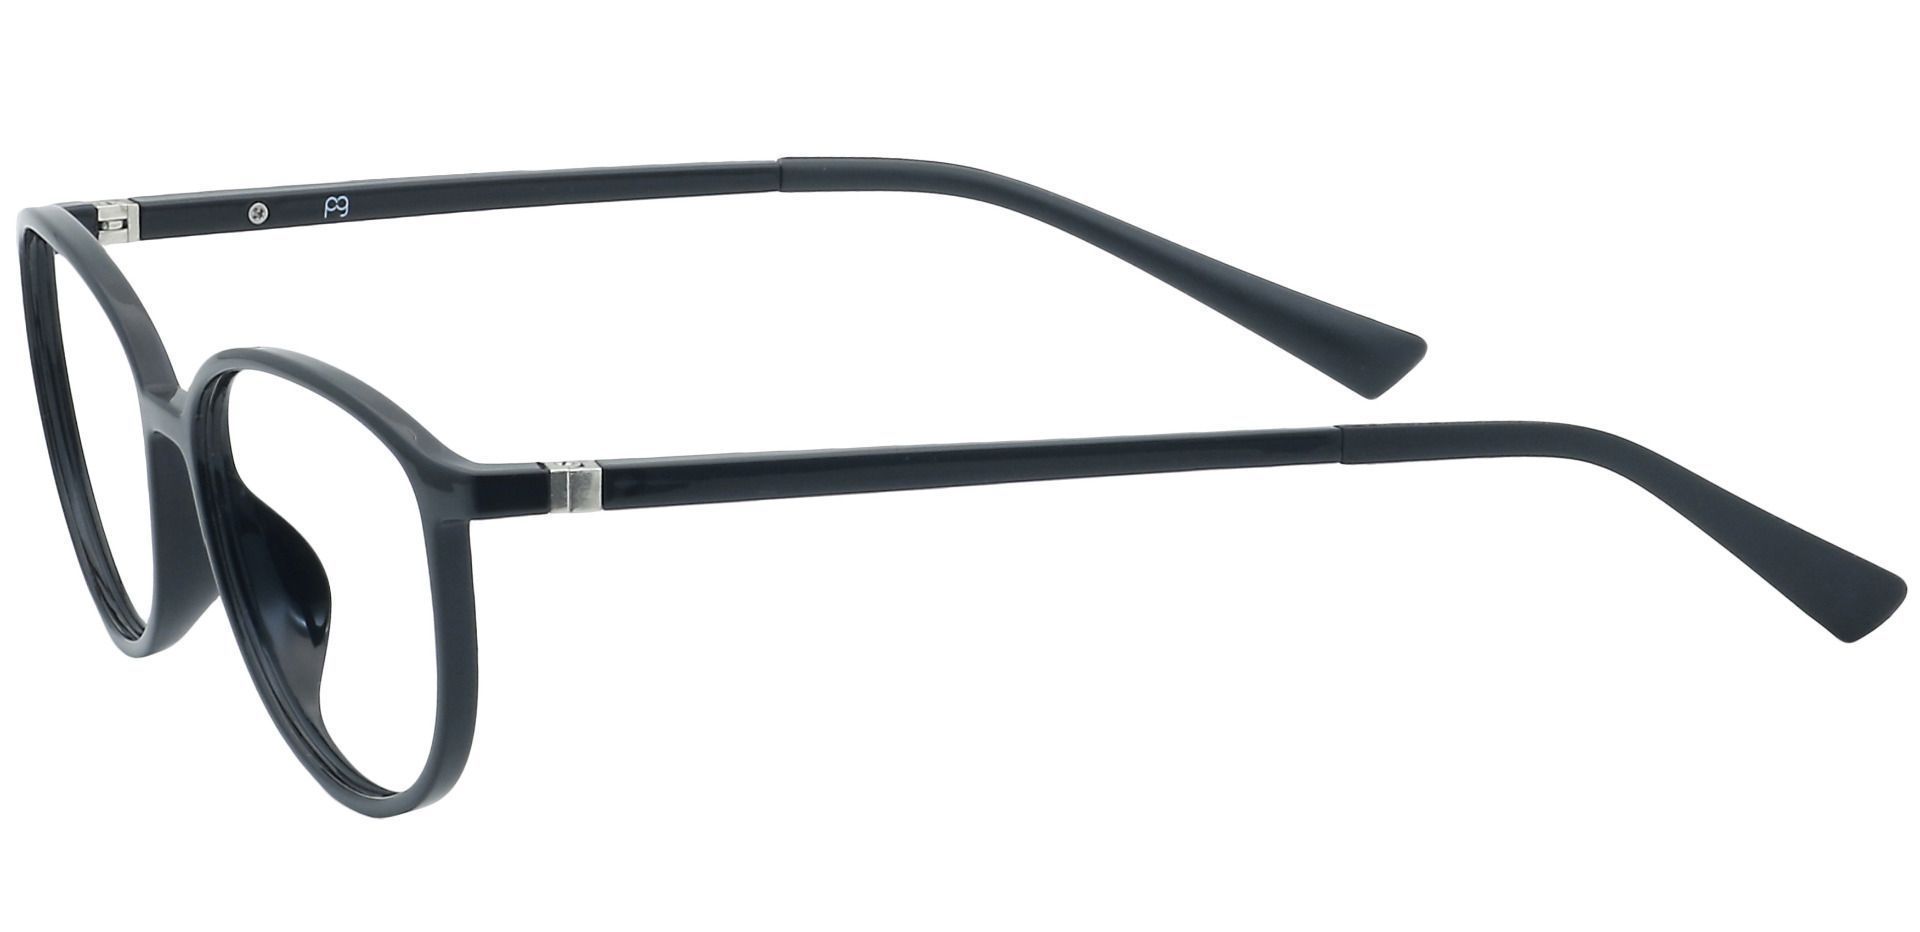 Melbourne Oval Lined Bifocal Glasses - Black